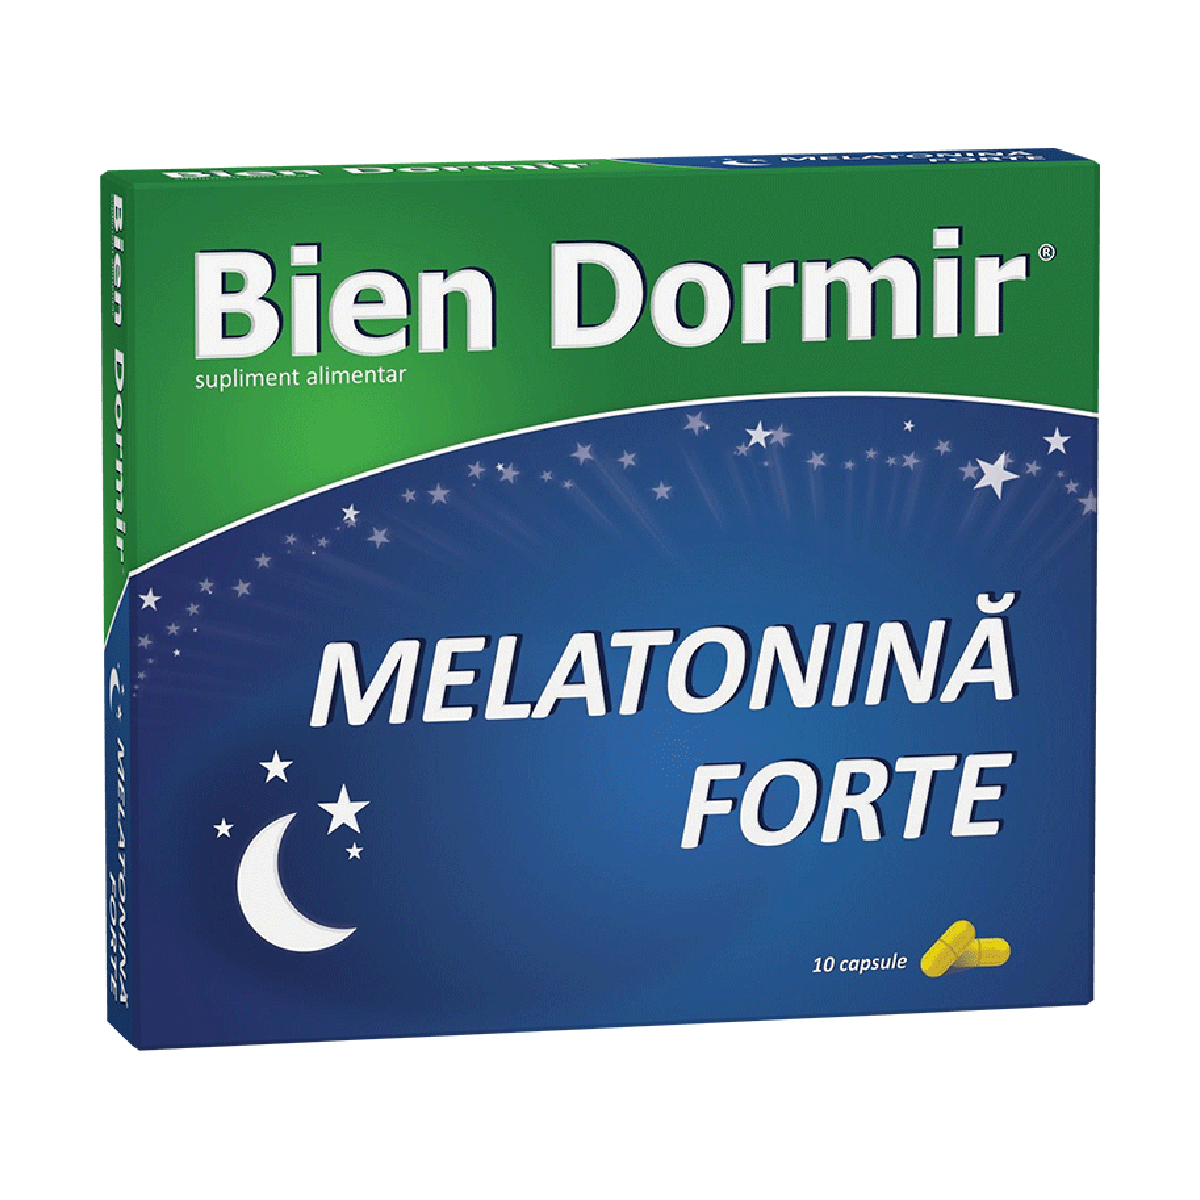 Bien Dormir + Melatonina forte, 10 capsule Bien imagine 2022